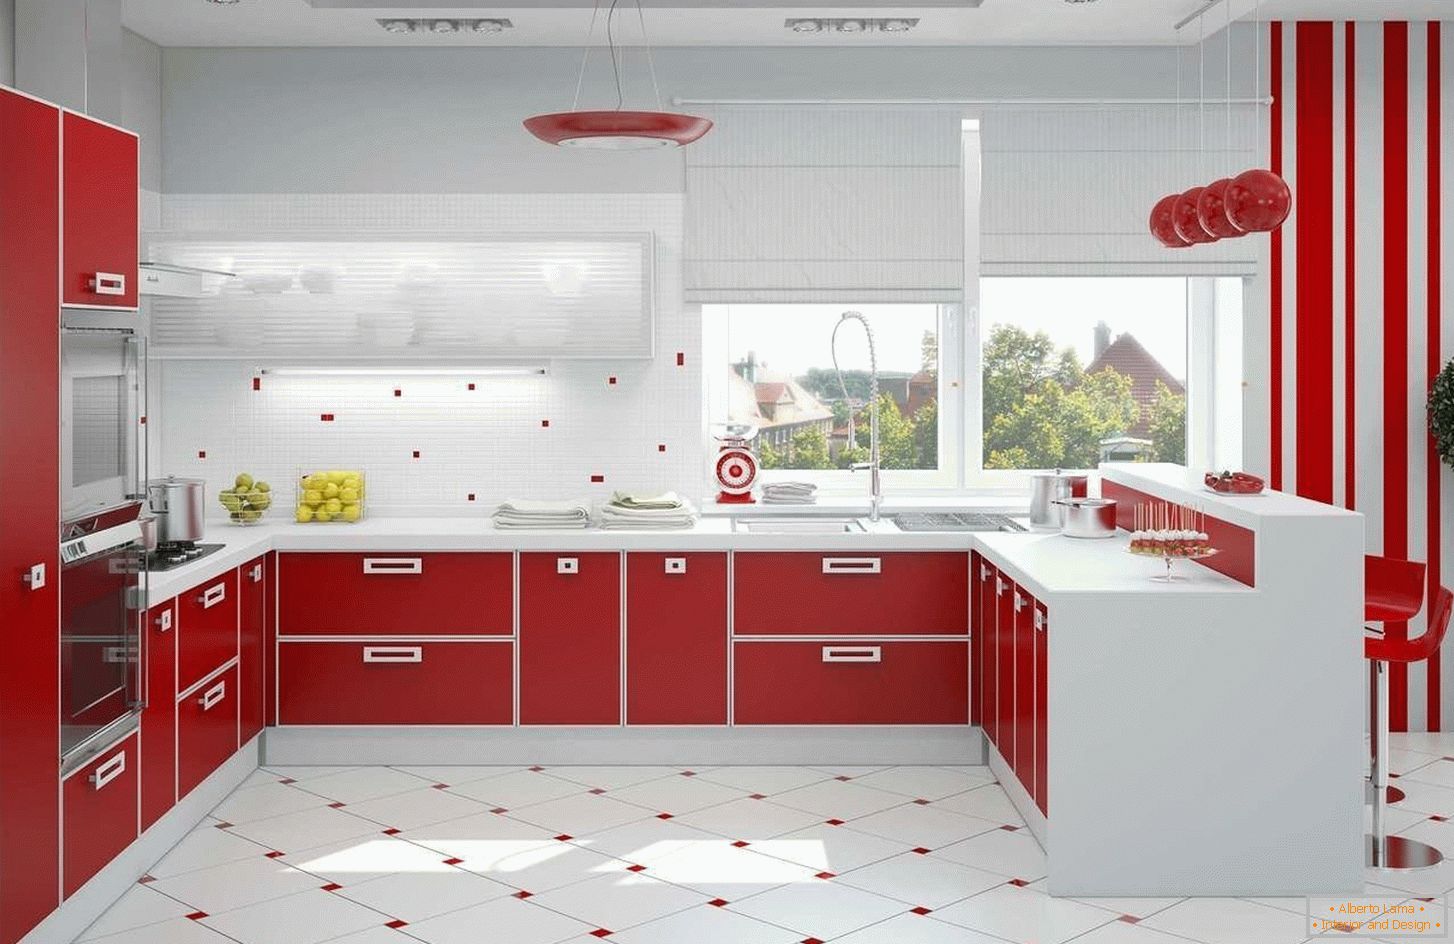 Crveno-bela unutrašnjost kuhinje